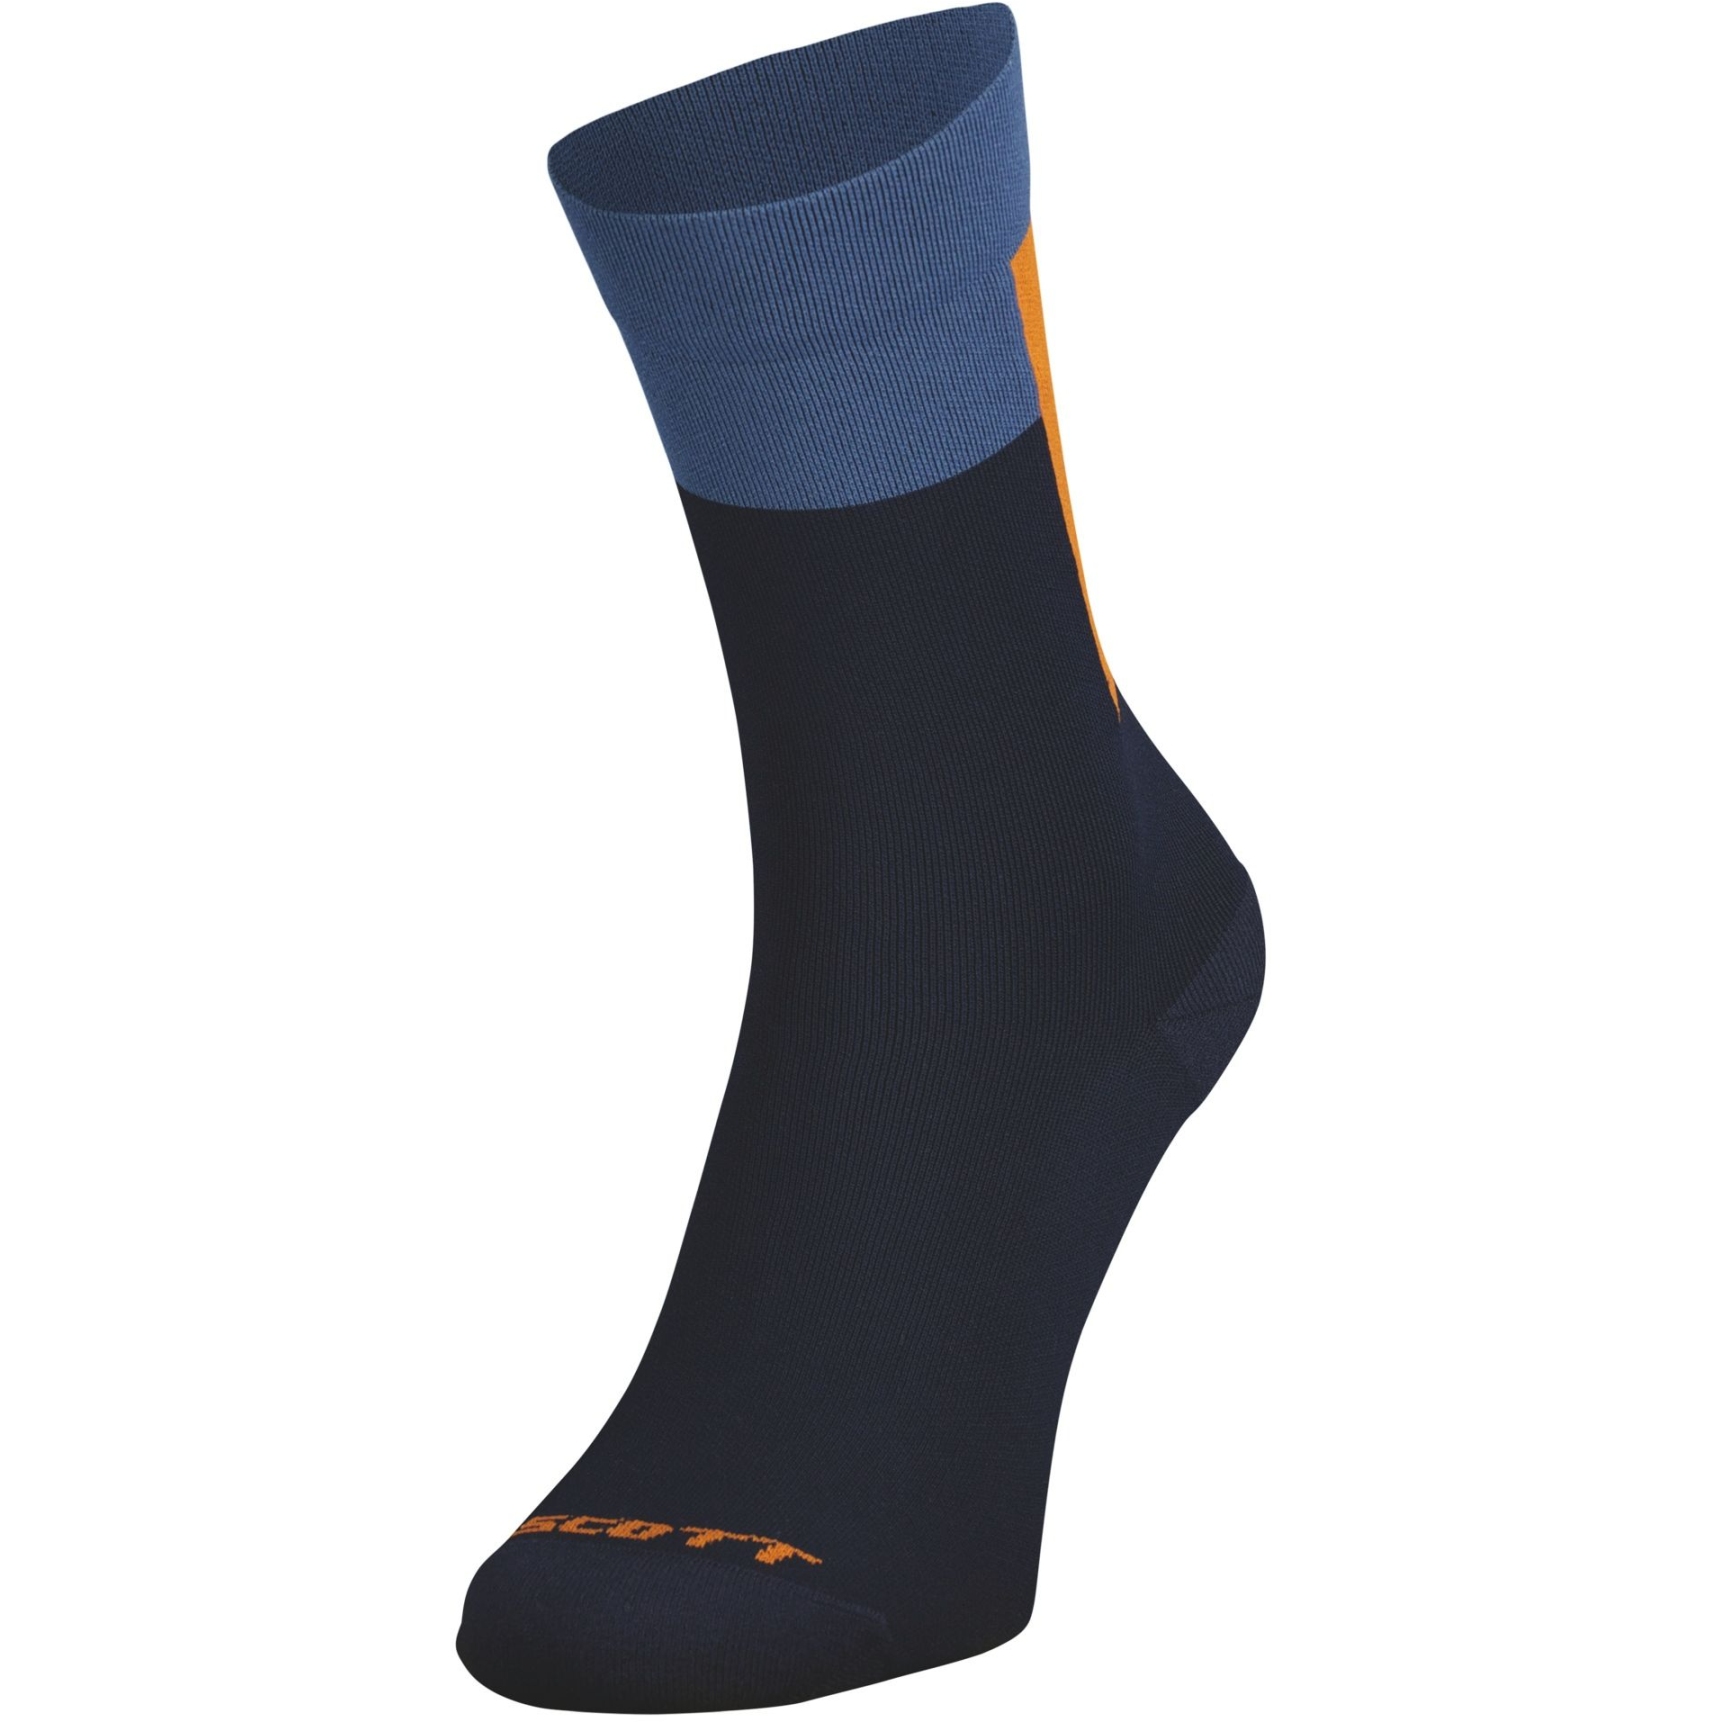 Produktbild von SCOTT Block Stripe Crew Socken - dark blue/braze orange